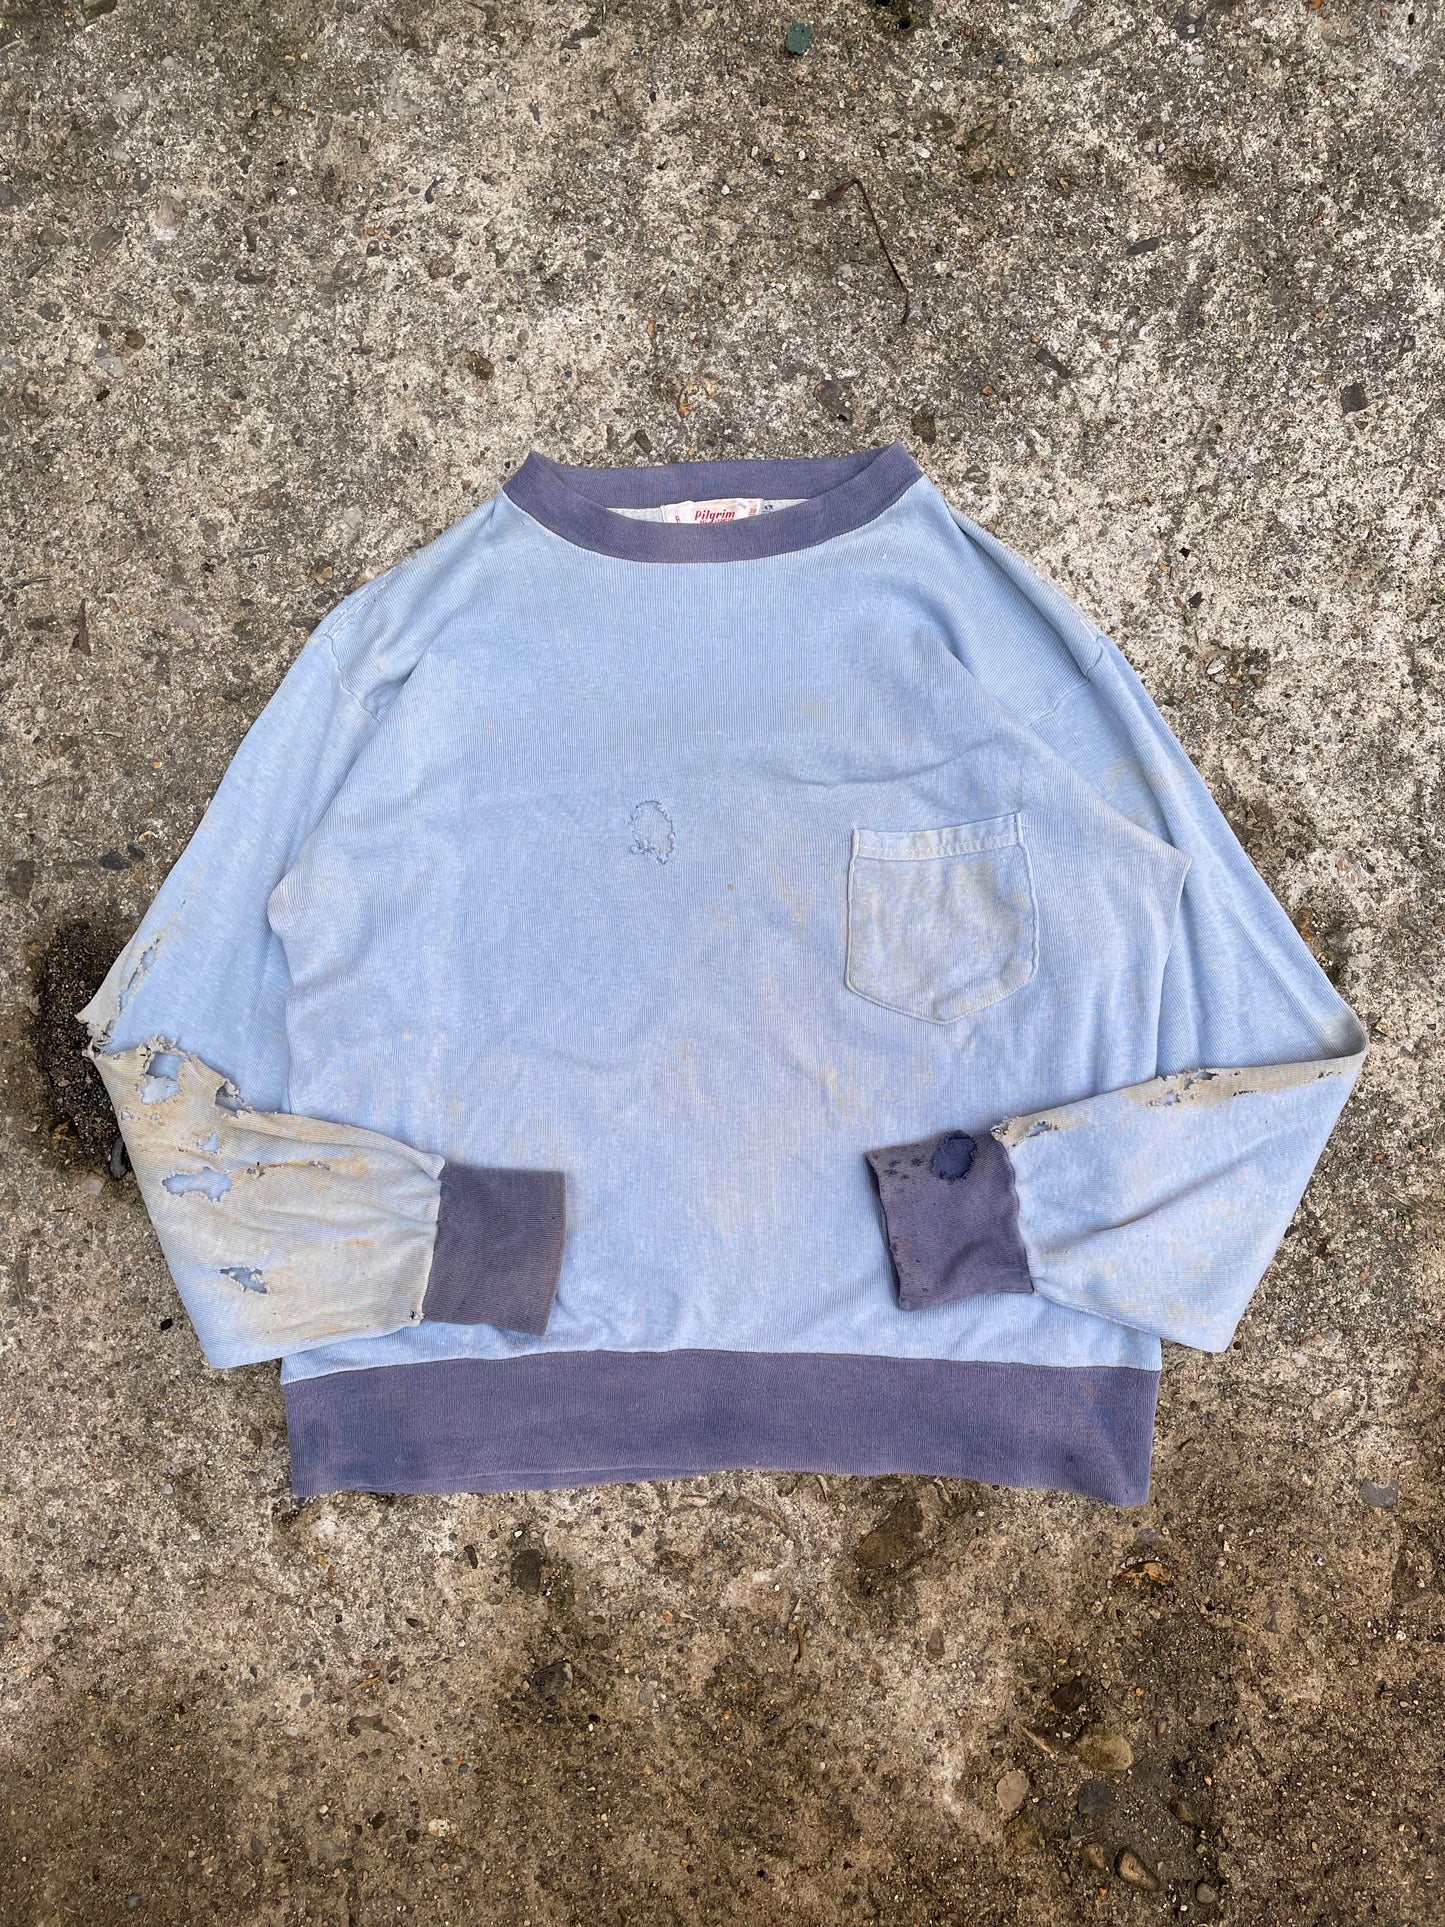 1950's/1960's Pilgrim Thrashed Long Sleeve Shirt - M